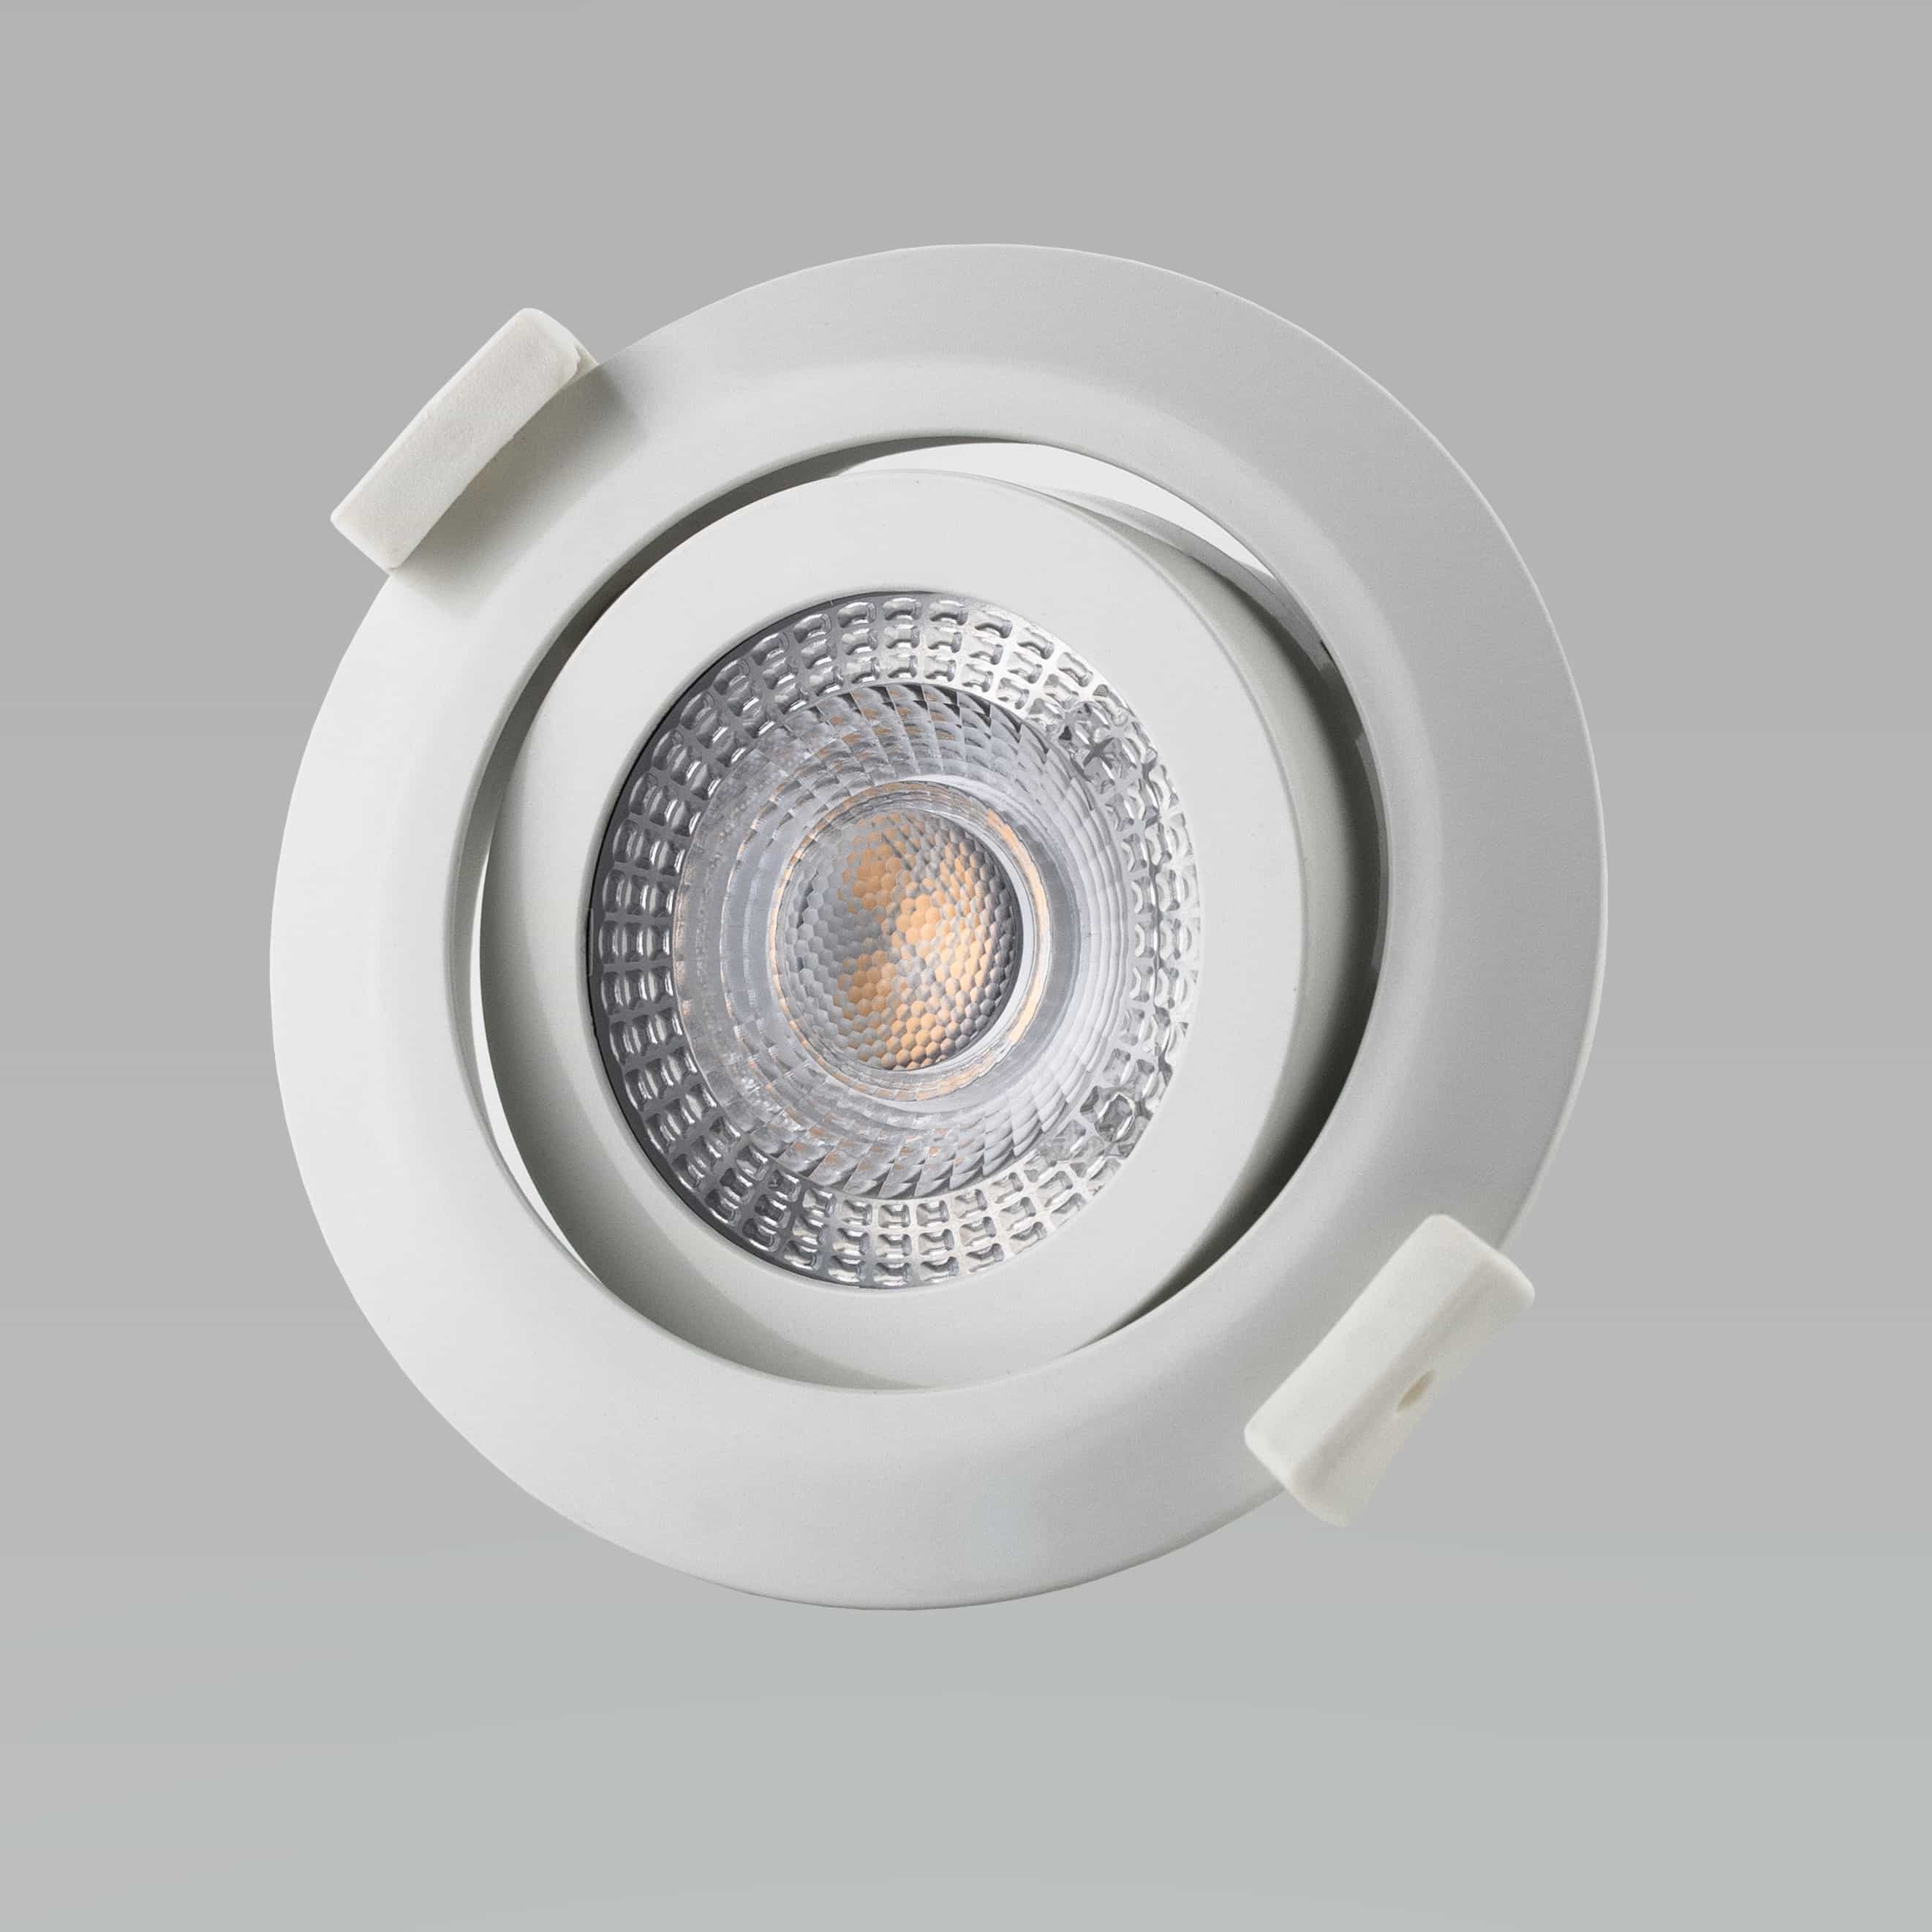 M-Light LED Einbaustrahler PLANO dimmbar Weiß 5W, 230V, 3.000K #81-3131#